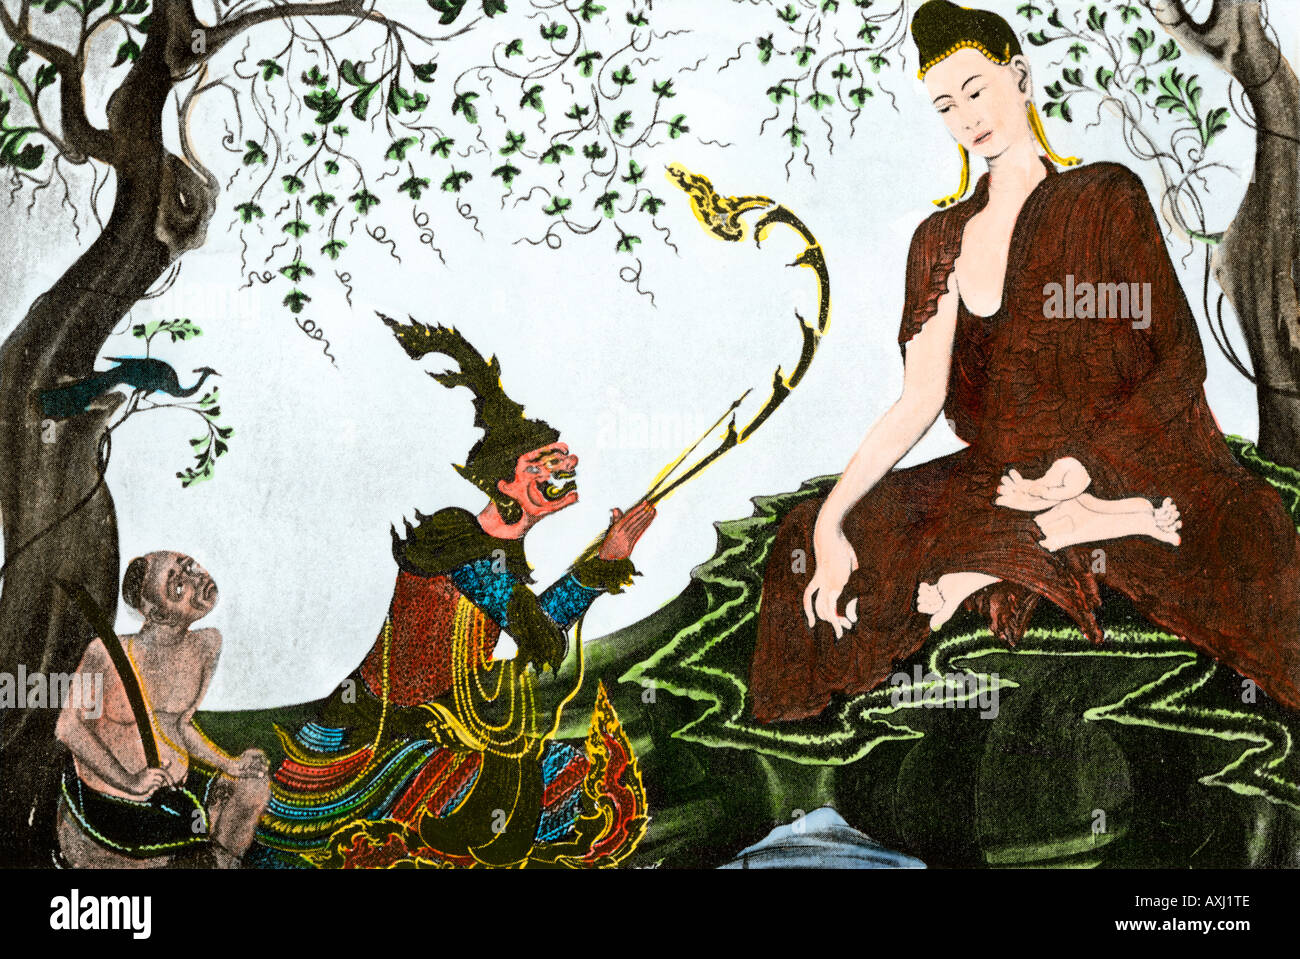 Siddhartha Gautama, le fondateur du bouddhisme. À la main, gravure sur bois Banque D'Images